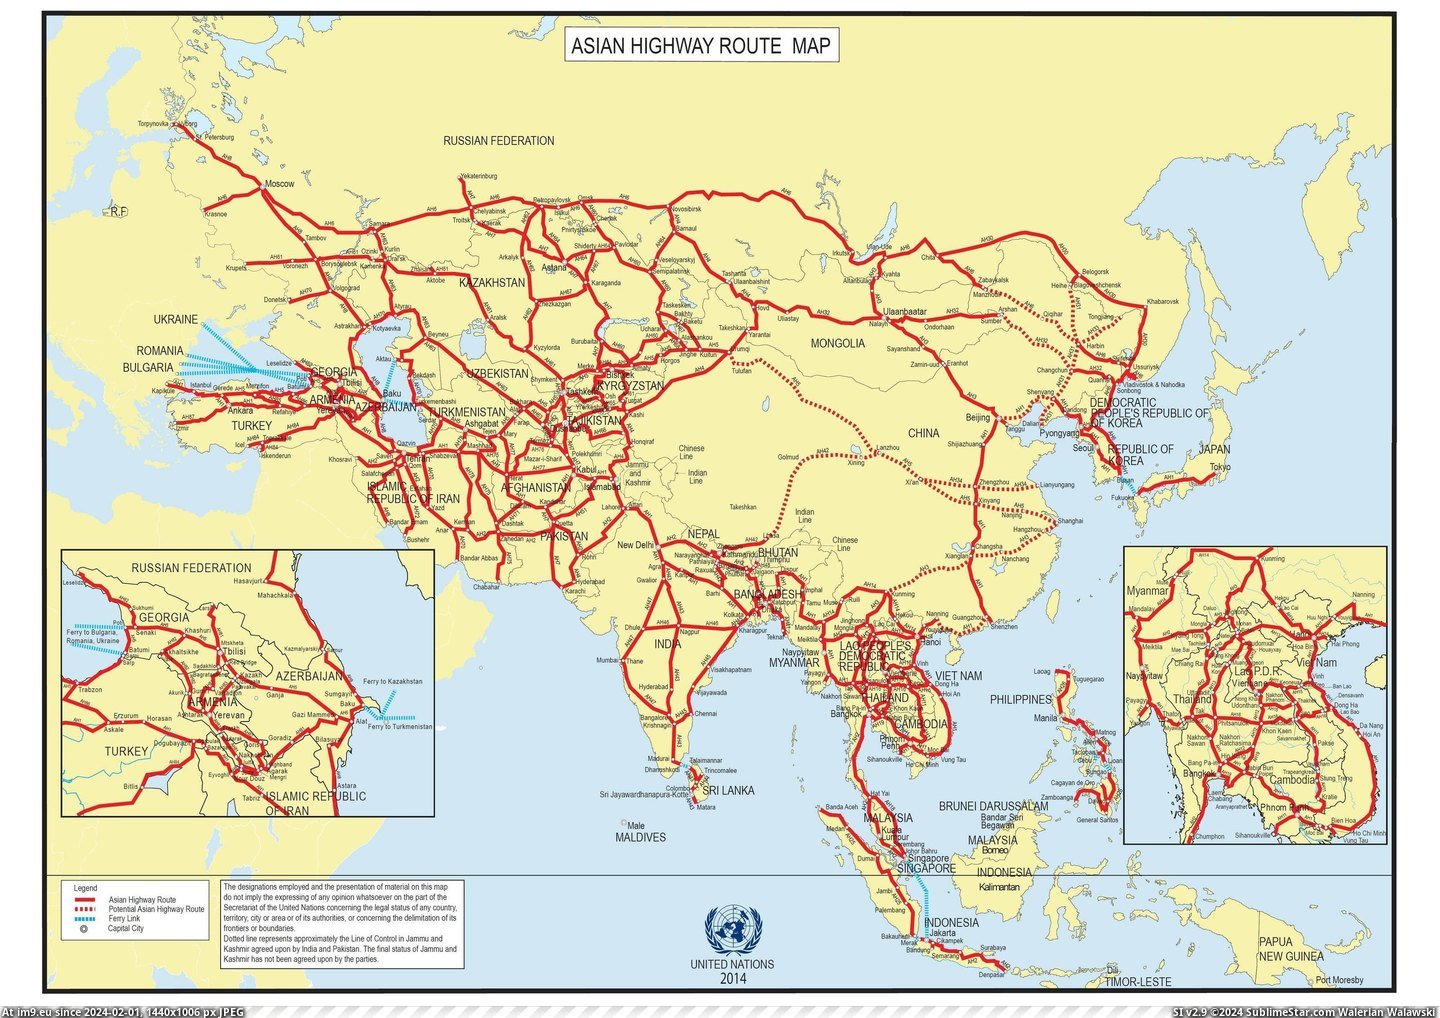 #Asian #Network #Highway [Mapporn] Asian Highway Network [4000x2809] Pic. (Bild von album My r/MAPS favs))